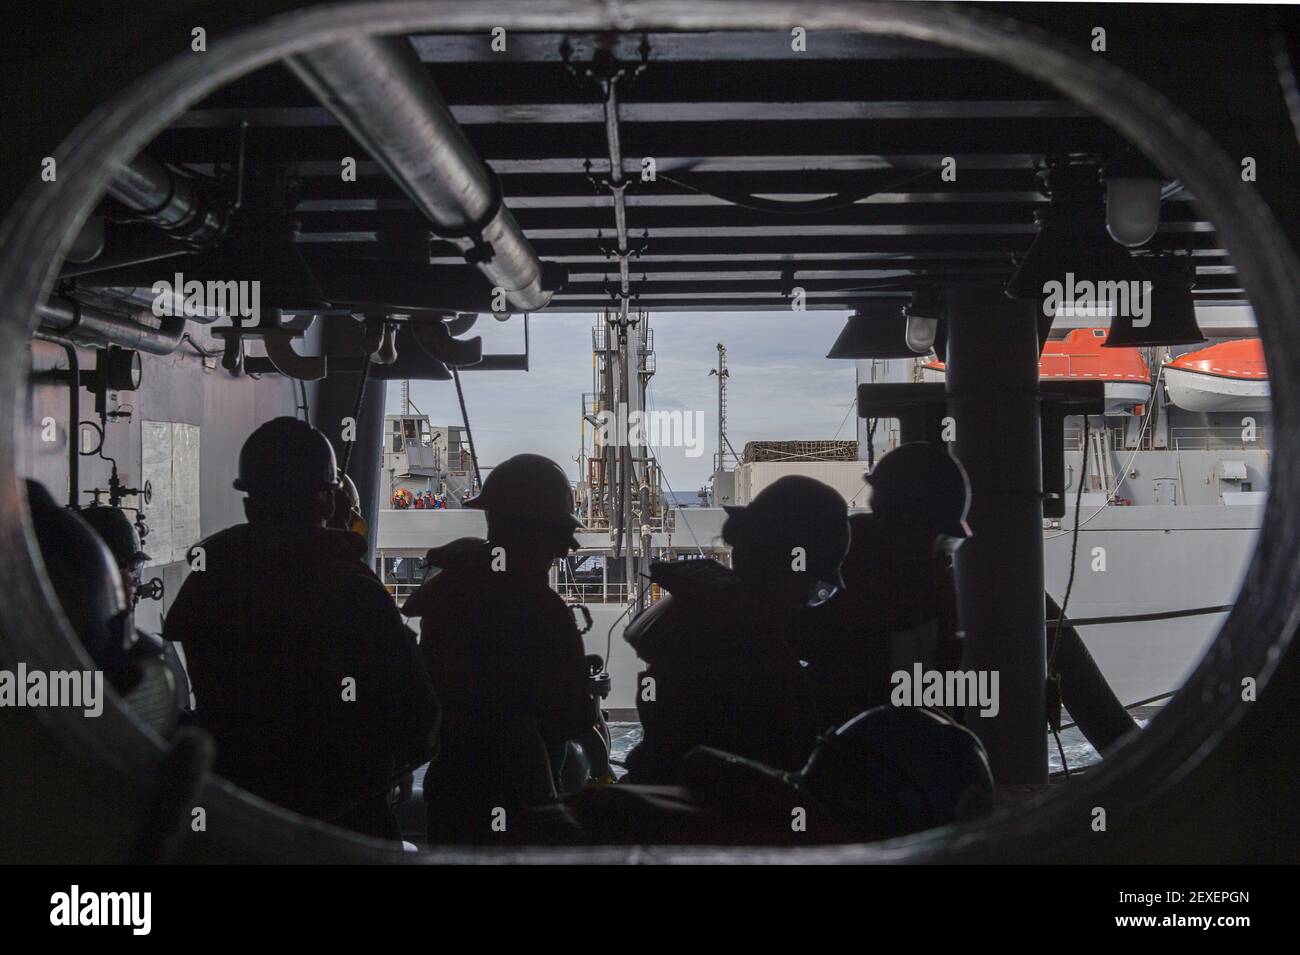 OCÉANO ATLÁNTICO (Nov 17, 2015) marineros del departamento de cubierta hombre una estación de reabastecimiento en curso a bordo del portaaviones USS Harry S. Truman (CVN 75) durante un reabastecimiento en el mar con el aviador de reabastecimiento de la flota USNS John Lenthall (T-AO 189). Harry S. Truman Strike Group se ha desplegado para apoyar las operaciones de seguridad marítima y los esfuerzos de cooperación en seguridad de teatro en las áreas de operación de la flota de EE.UU. 5th y 6th. (Foto de Seaman J. M. Tolbert/EE.UU., Especialista en Comunicación de masas Marina) *** por favor use crédito del campo de crédito *** Foto de stock